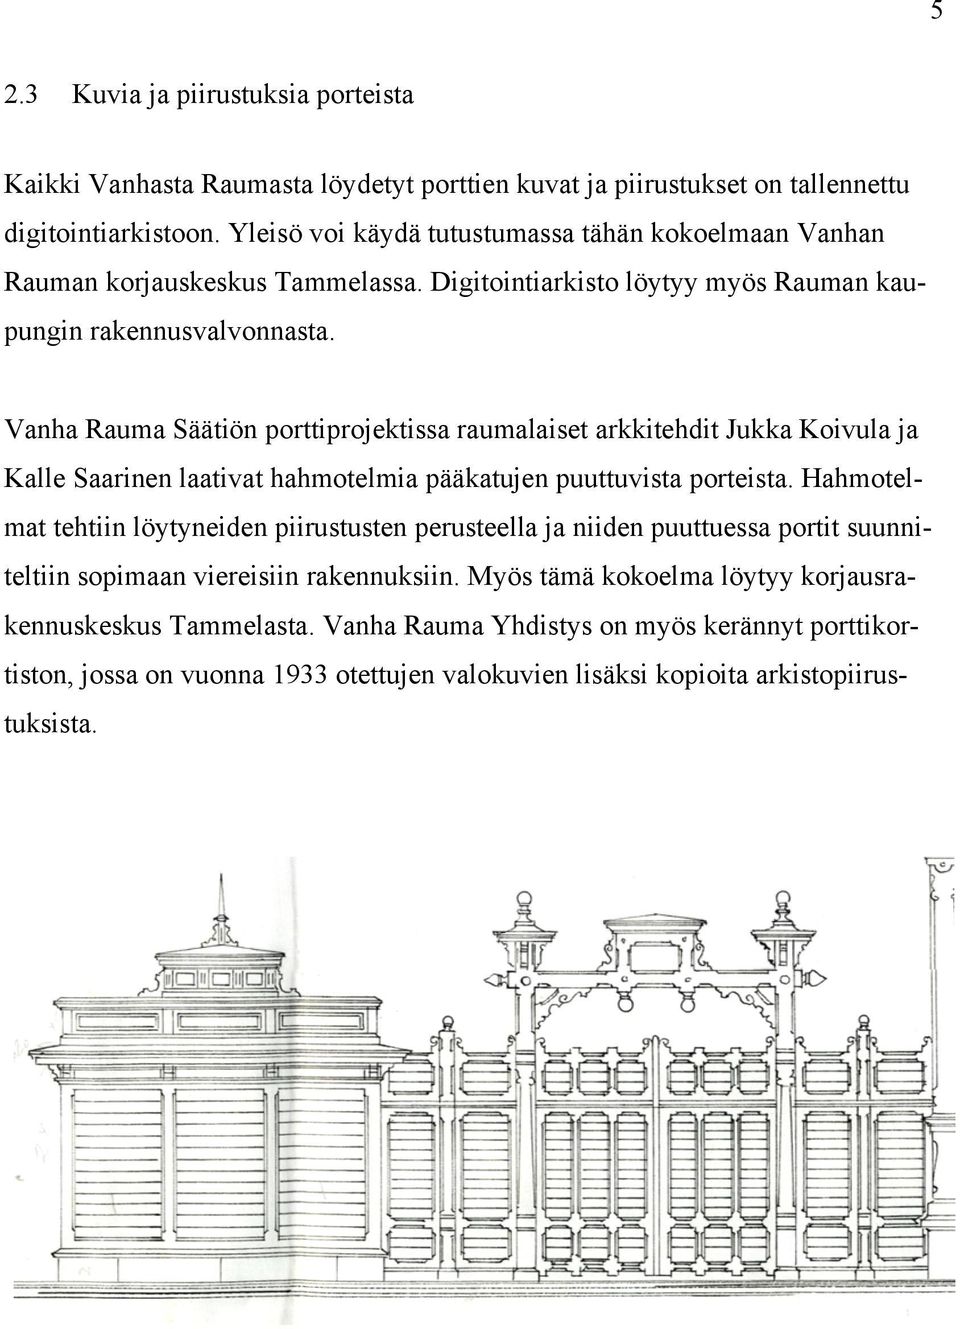 Vanha Rauma Säätiön porttiprojektissa raumalaiset arkkitehdit Jukka Koivula ja Kalle Saarinen laativat hahmotelmia pääkatujen puuttuvista porteista.